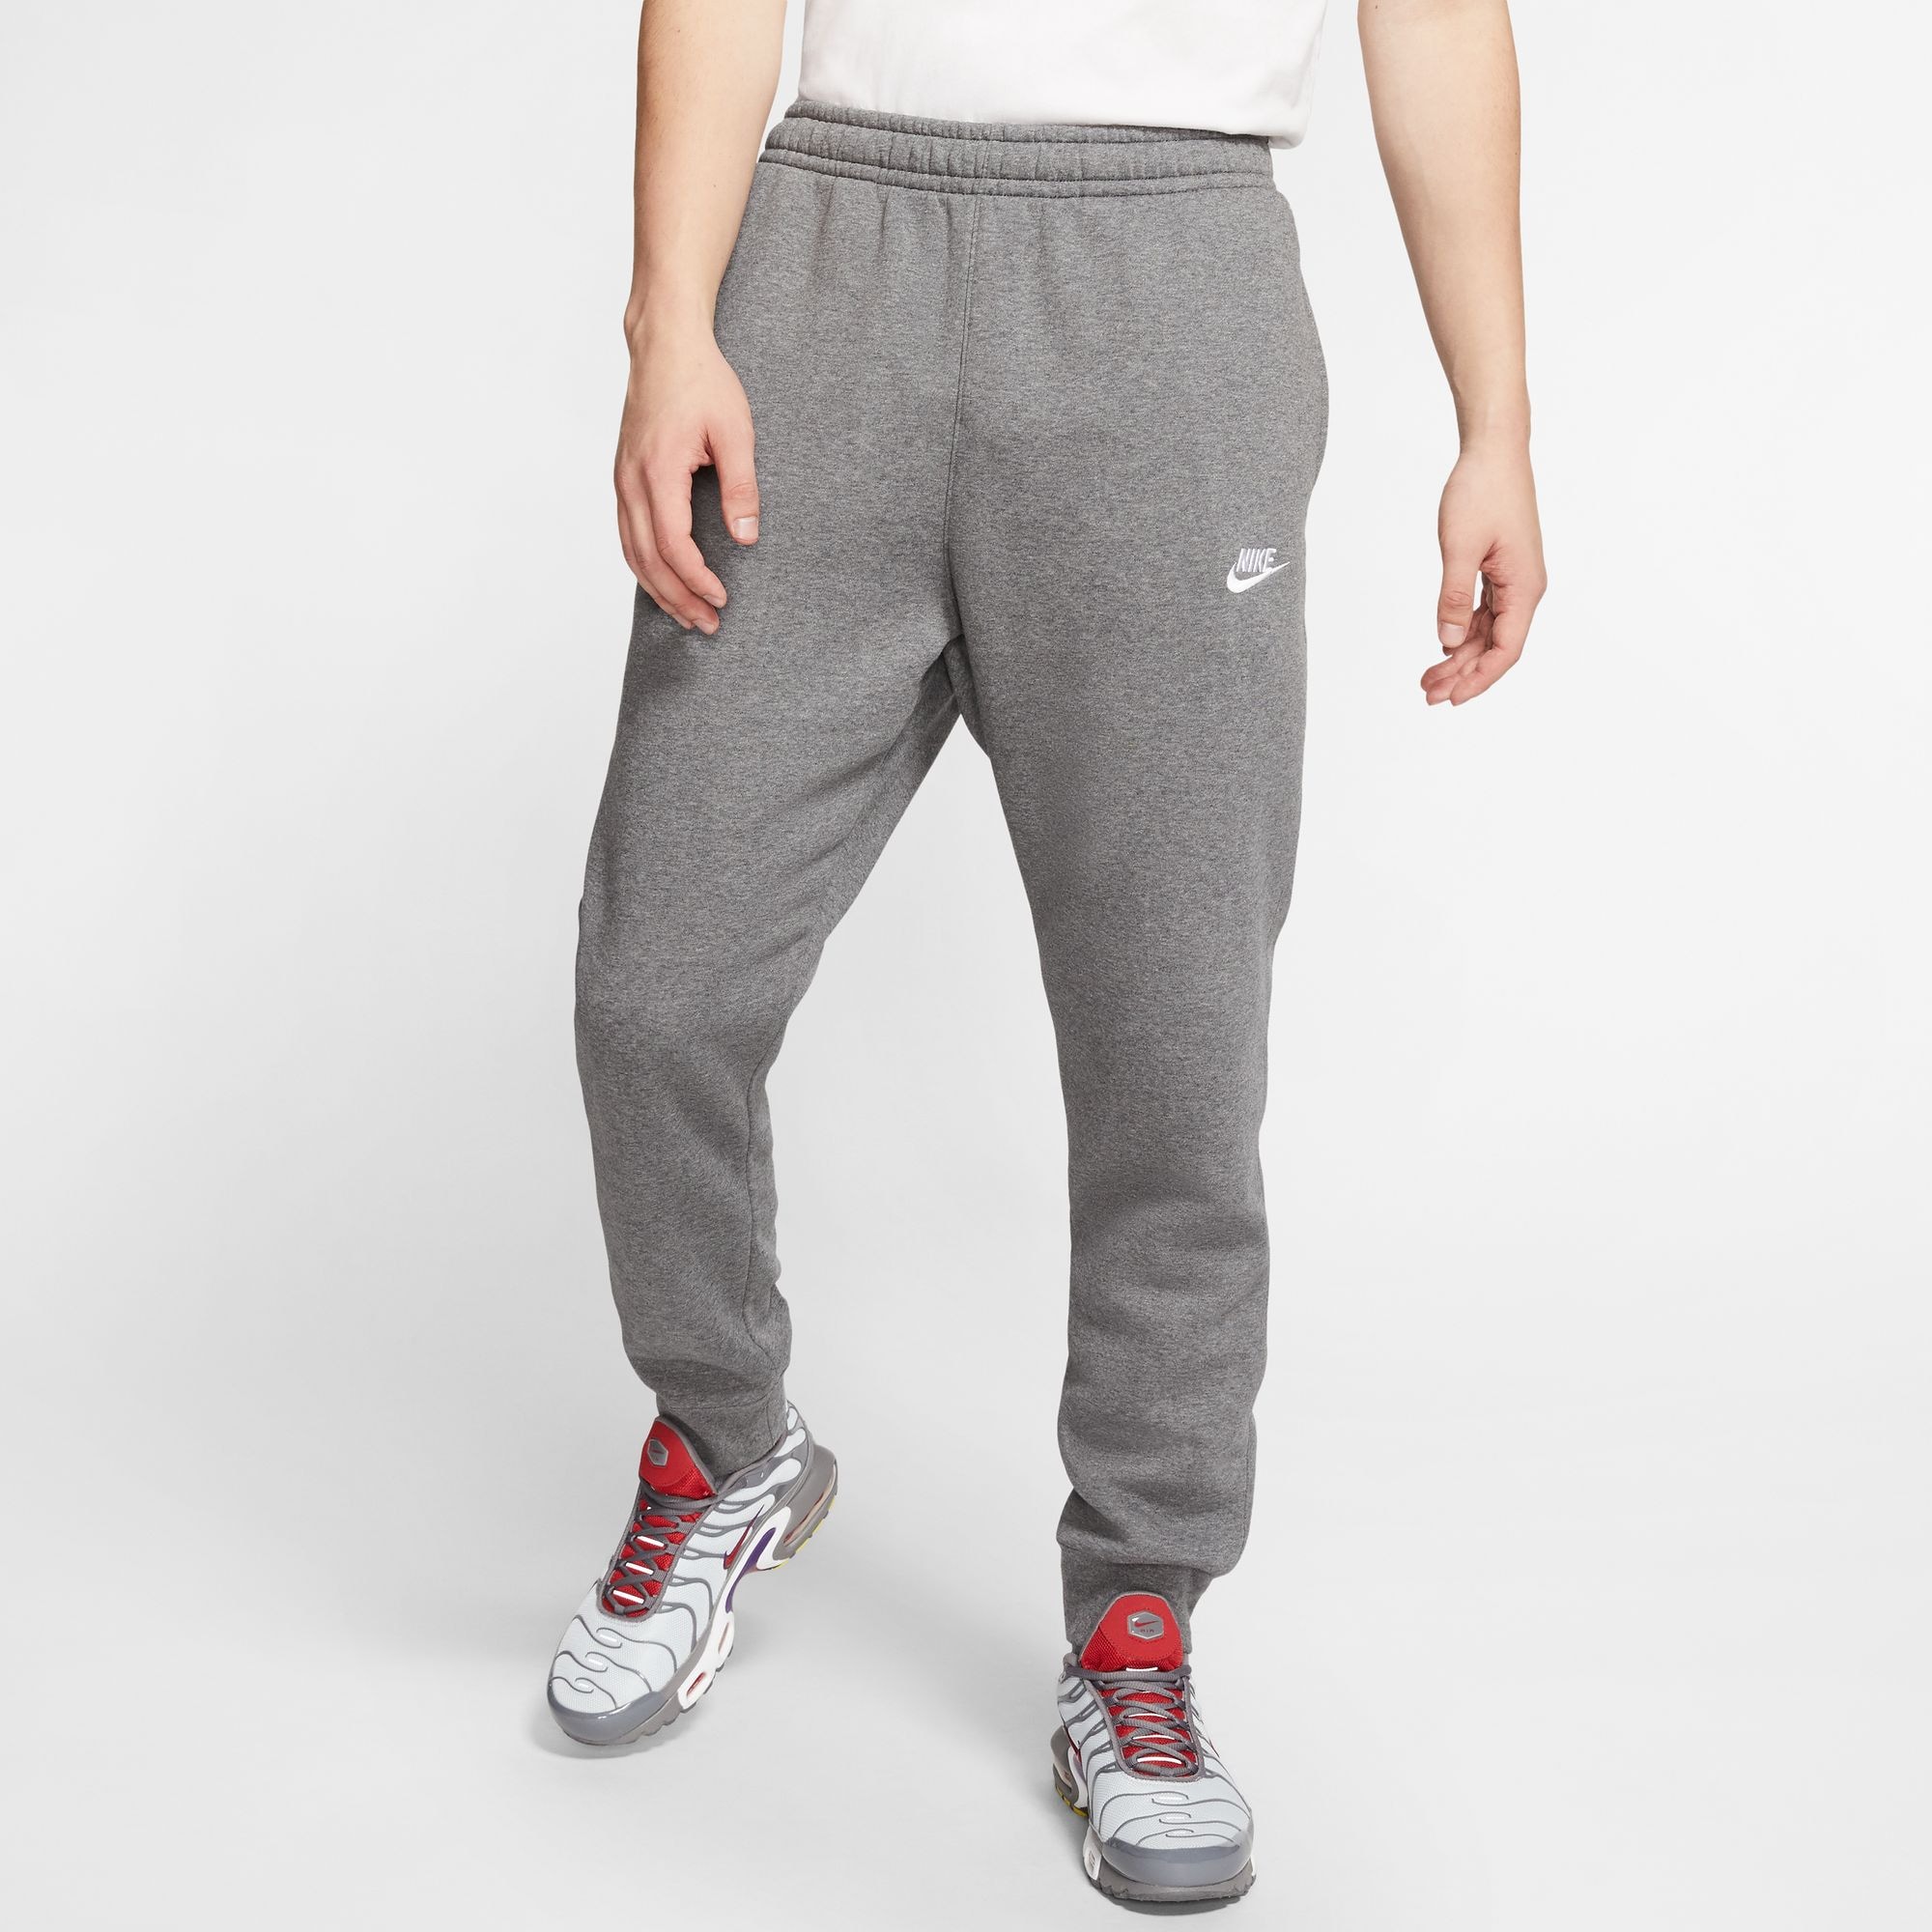 »CLUB bestellen Nike OTTO Sportswear online Jogginghose JOGGERS« FLEECE bei